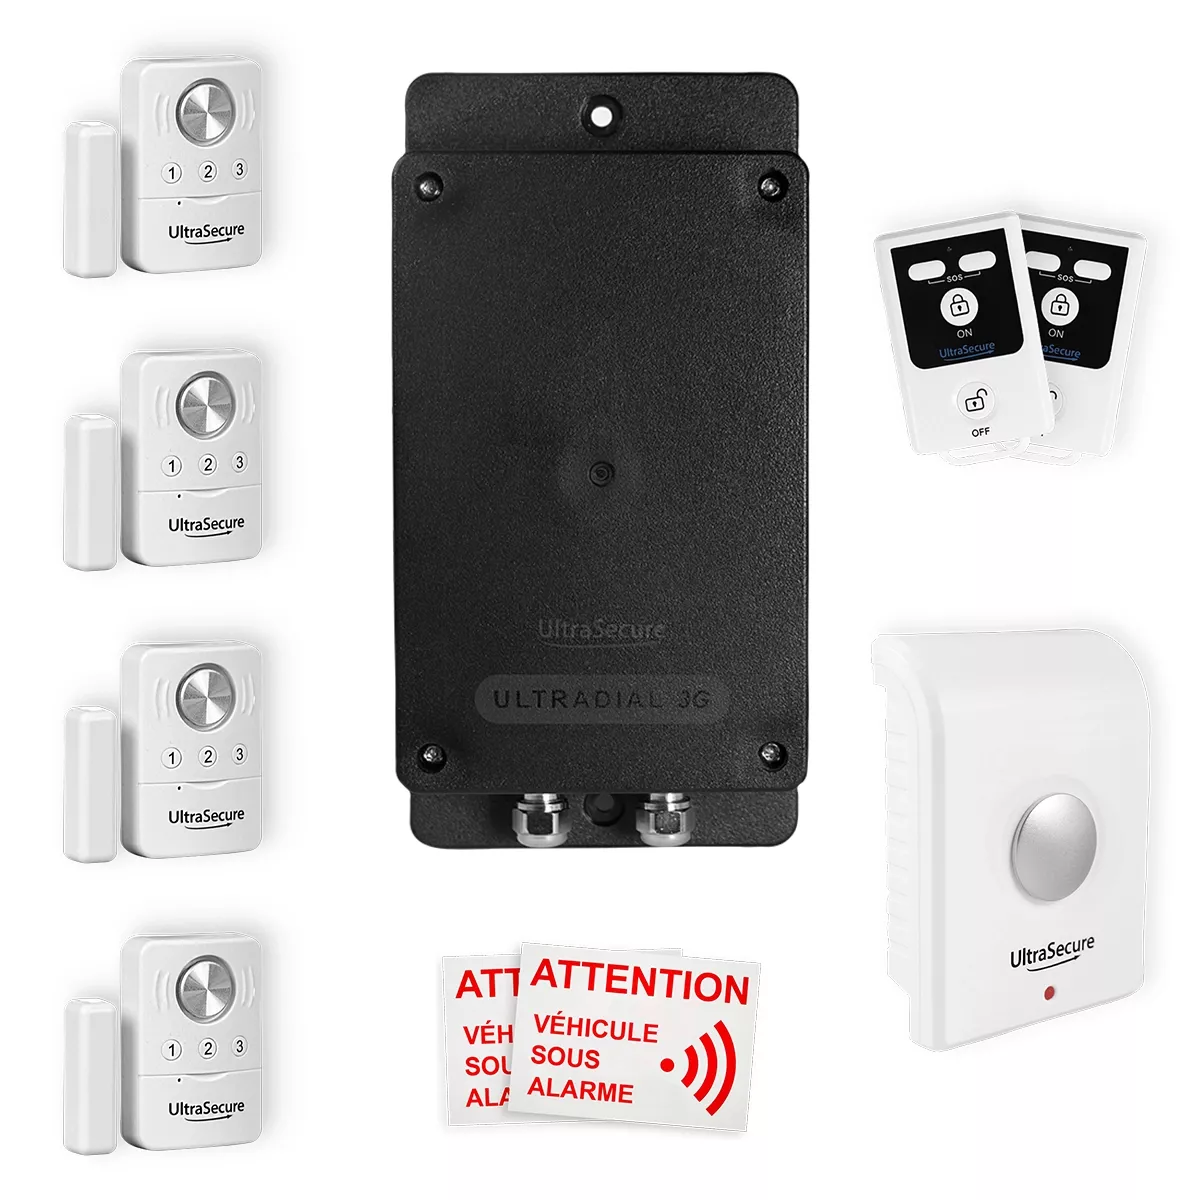 Pack alarme sans fil GSM avec vidéosurveillance full hd et sirènes déportées